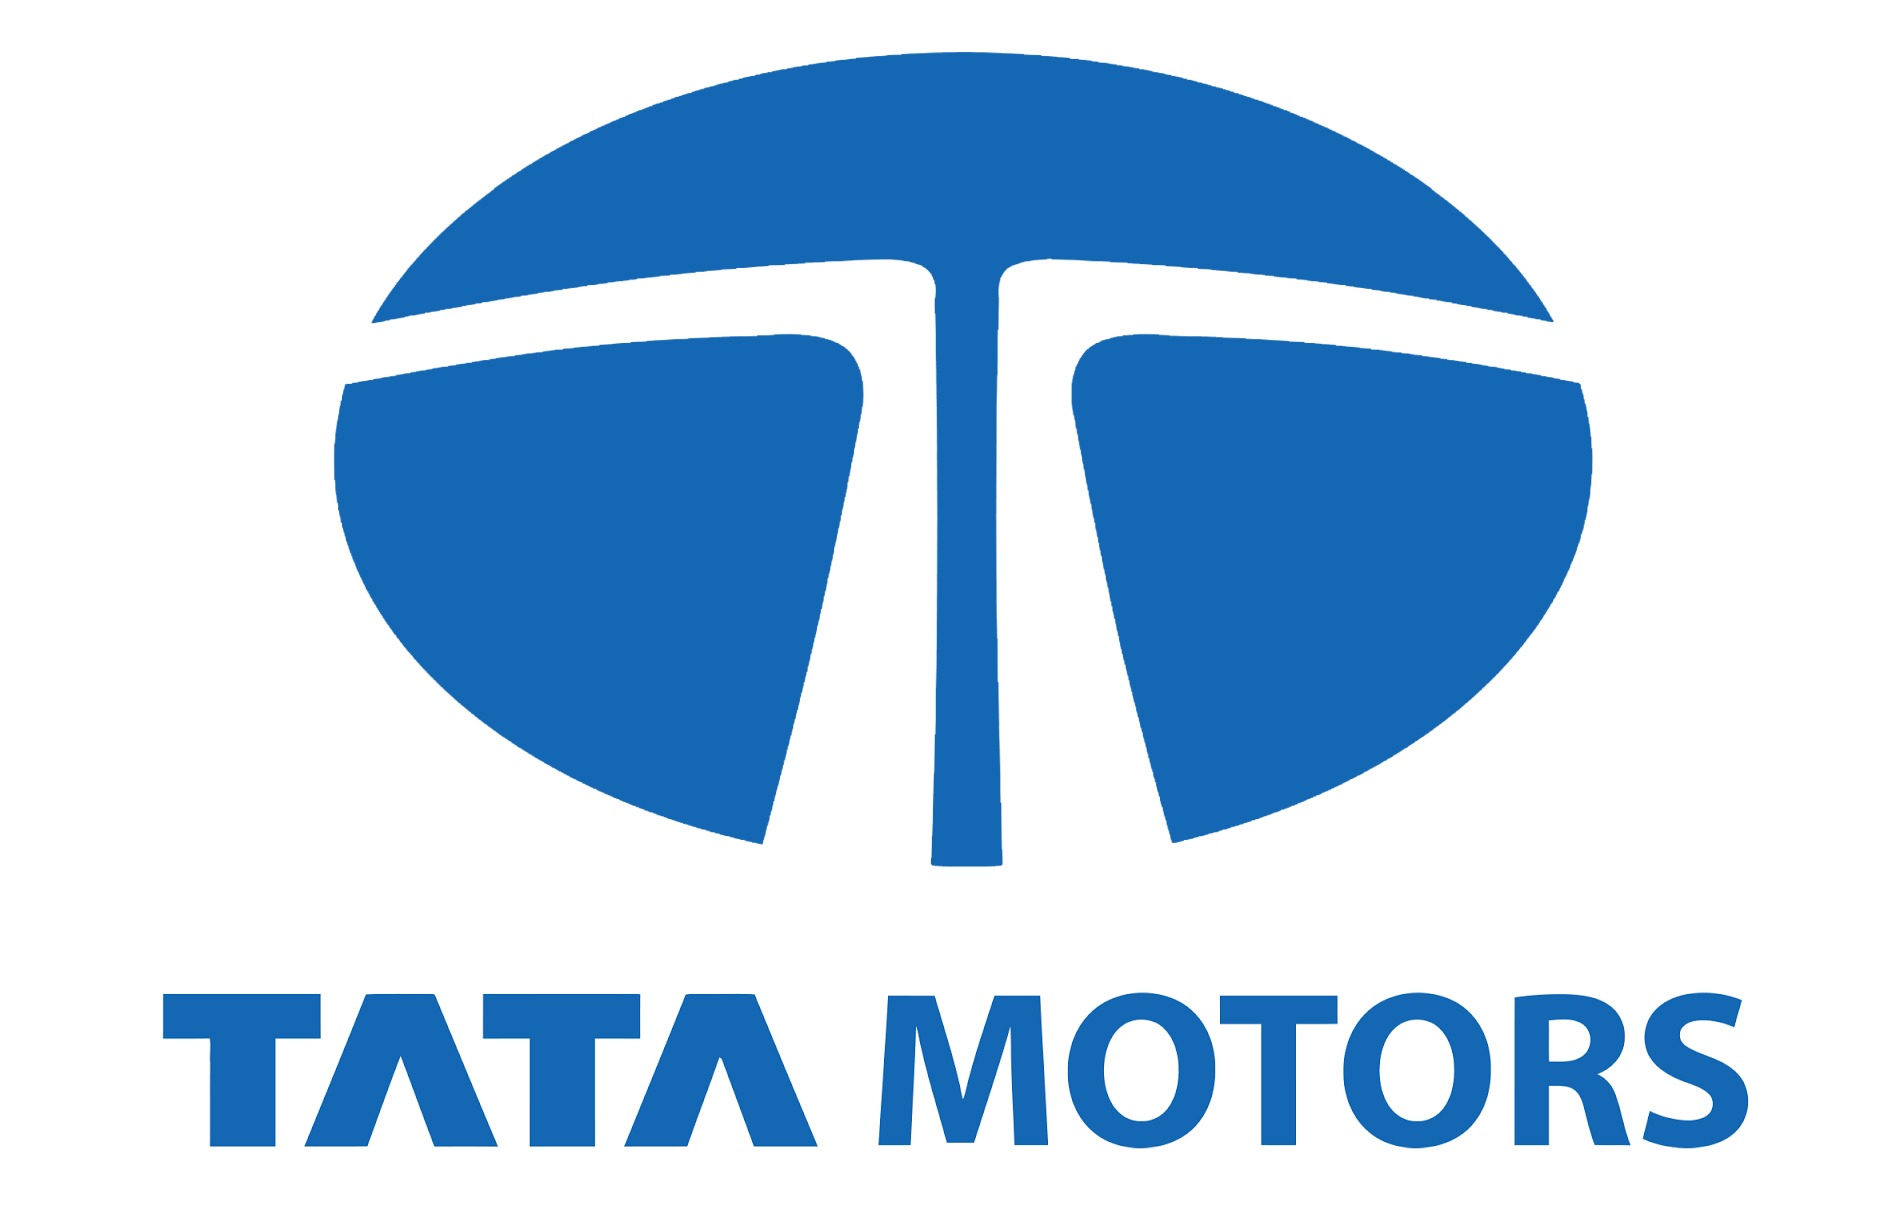 Tata Motors Cars Showroom - Commercial Automobiles Logo